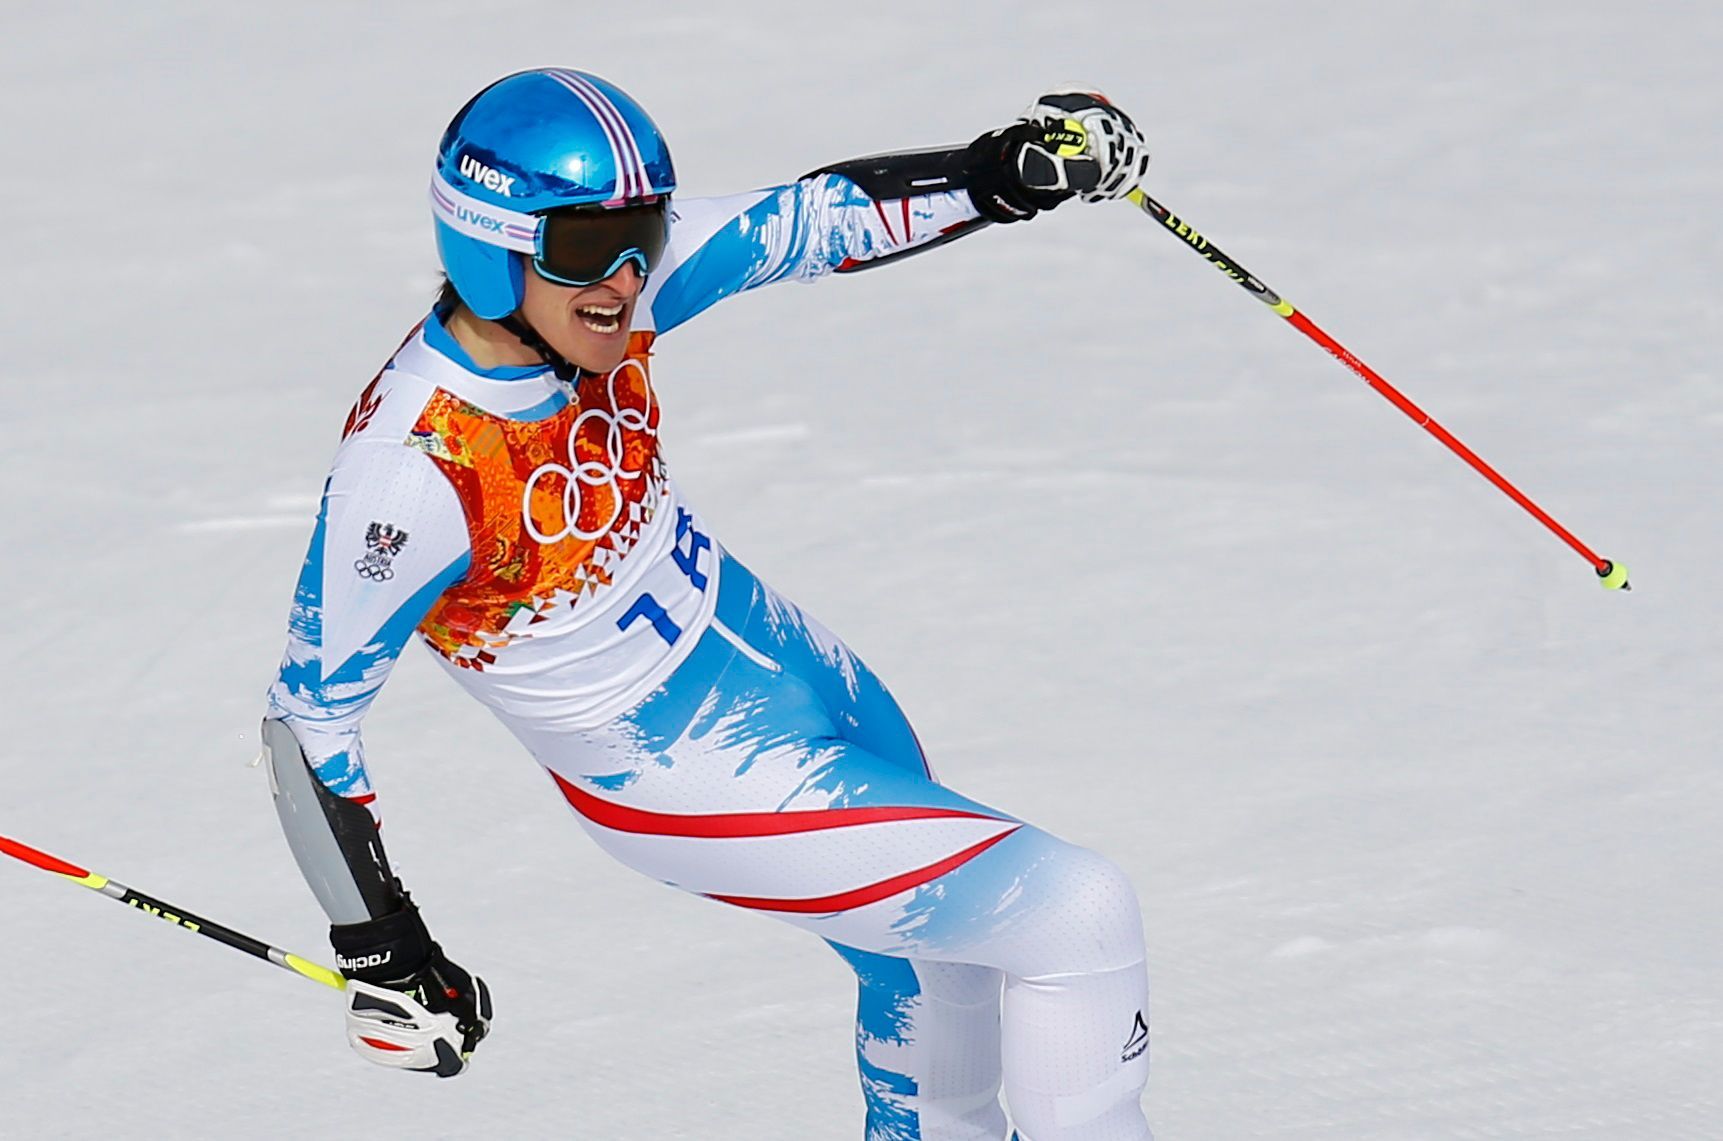 Soči 2014, obří slalom M: Matthias Mayer, Rakousko